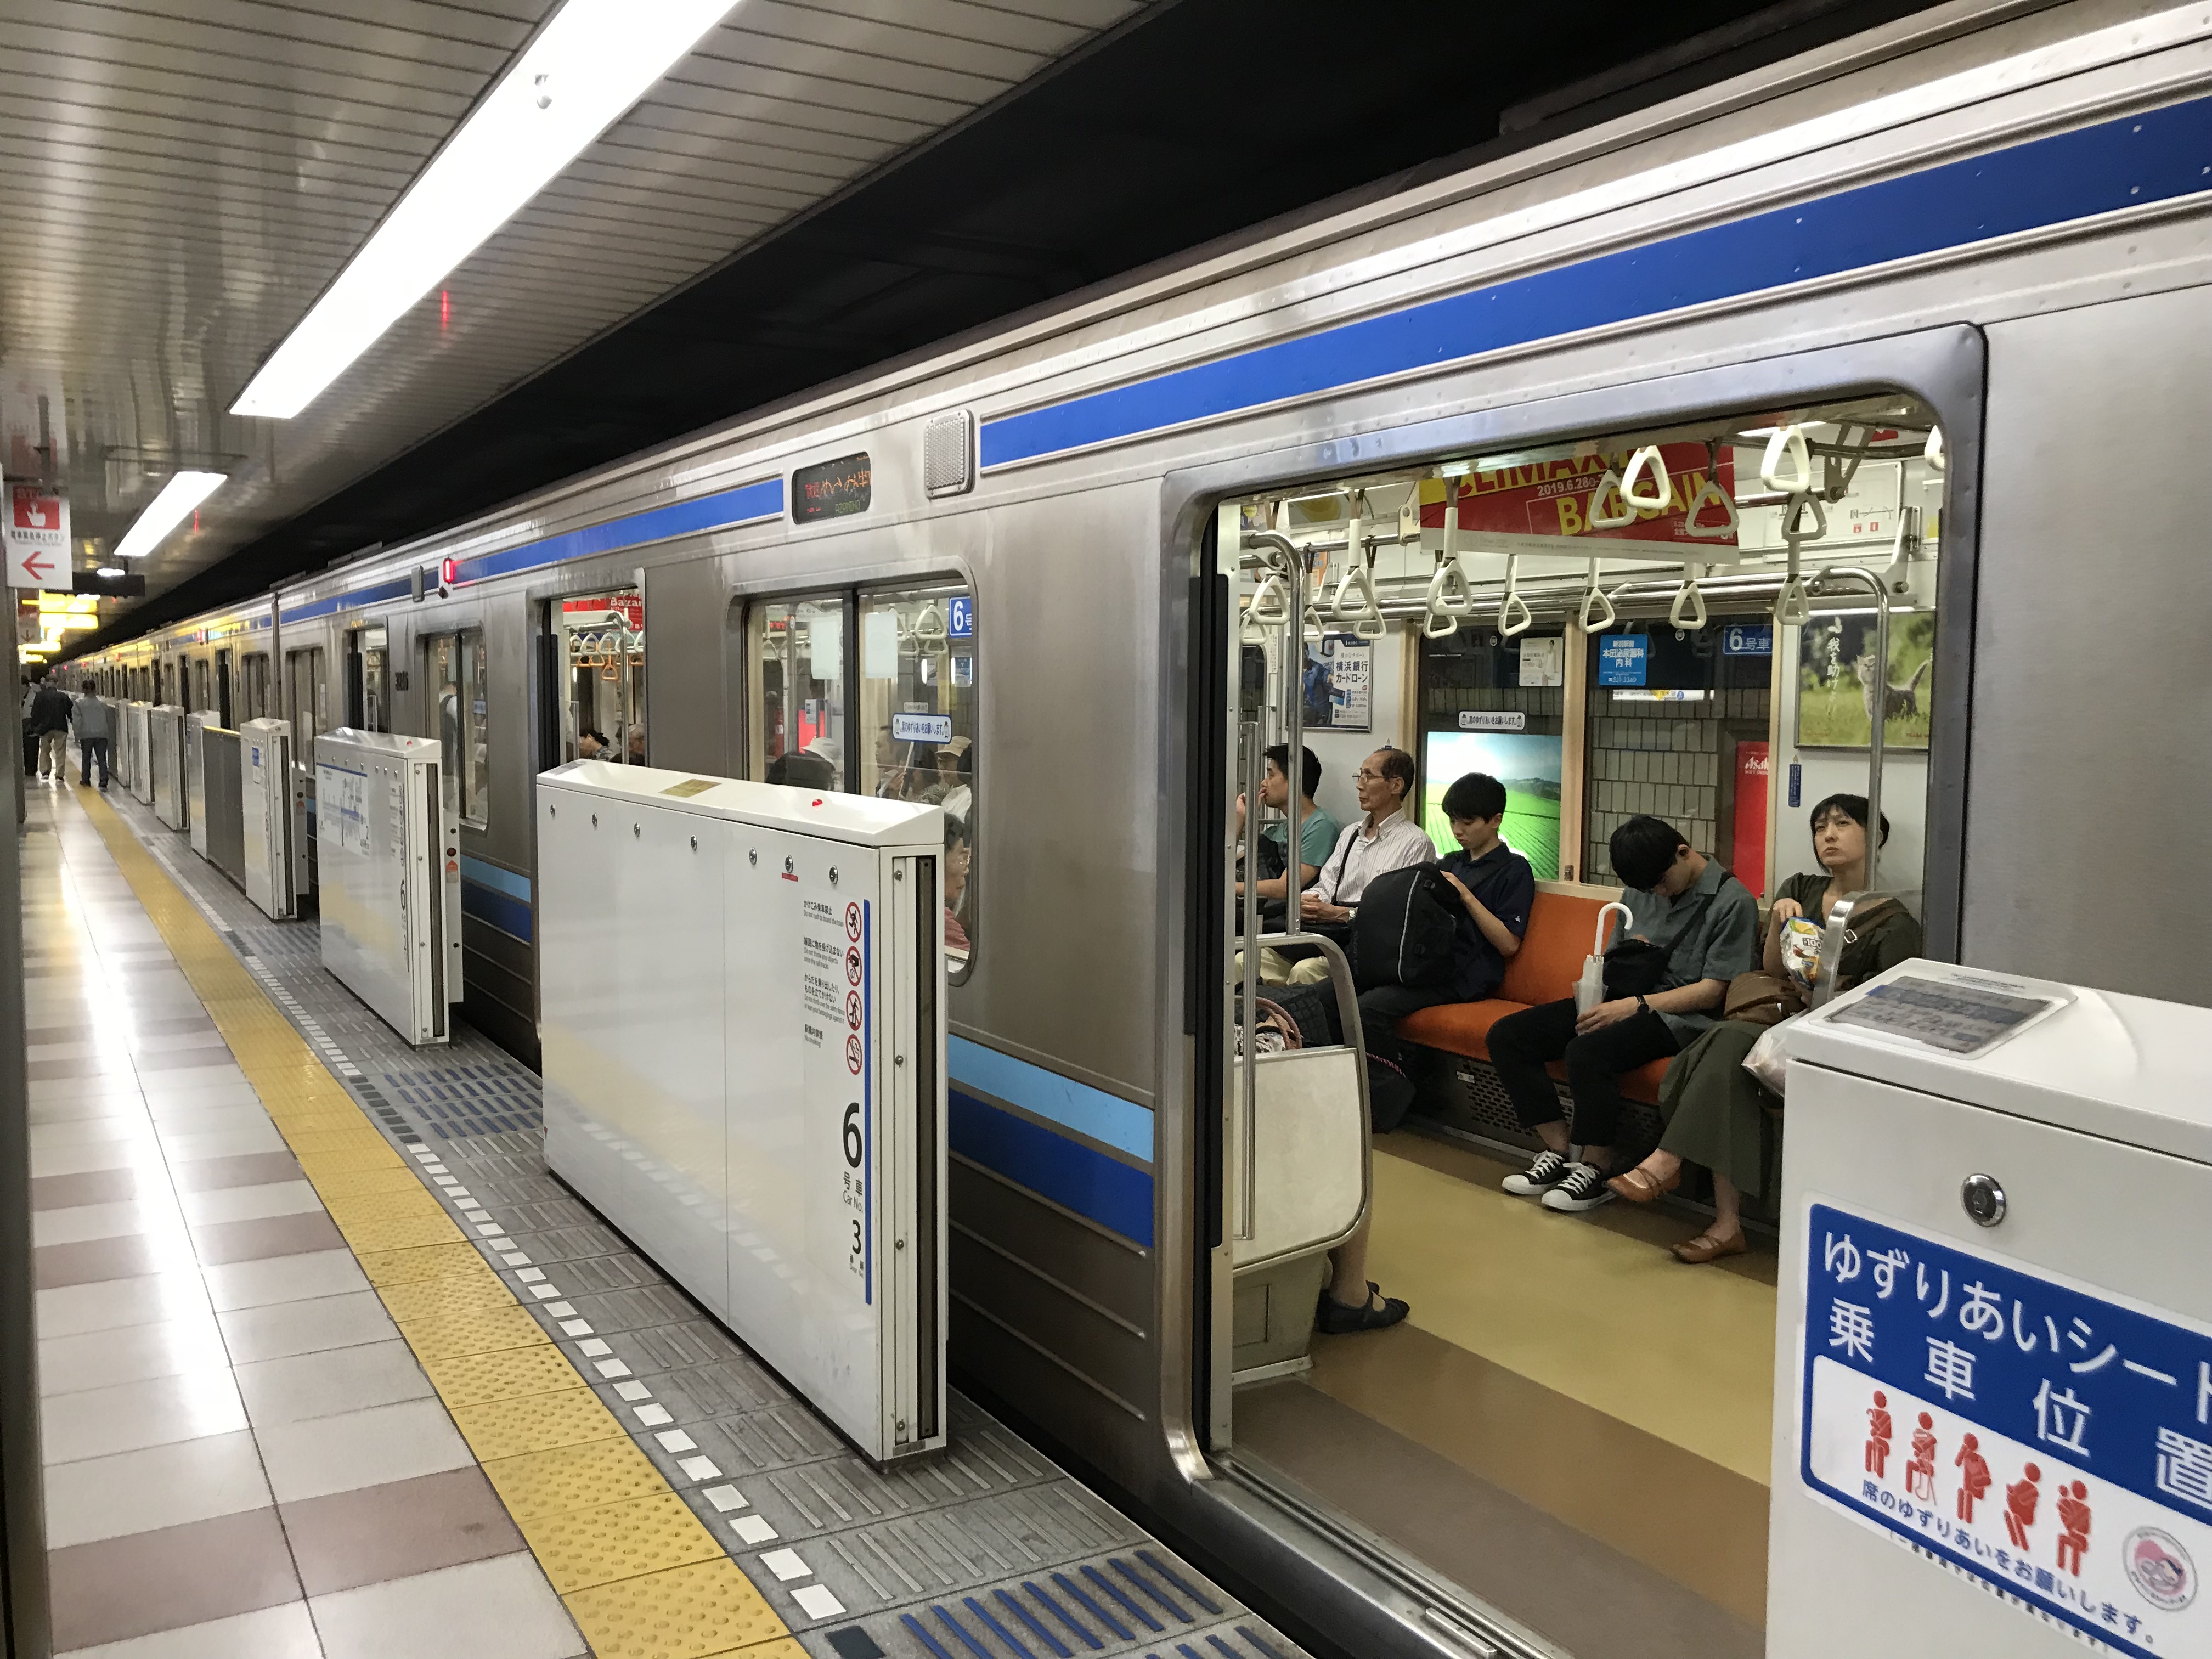 ブルーライン 延伸で日本で1番長い地下鉄へ ブルーラインに乗車 横浜探訪 東海道線沿線のそうくんの旅行記